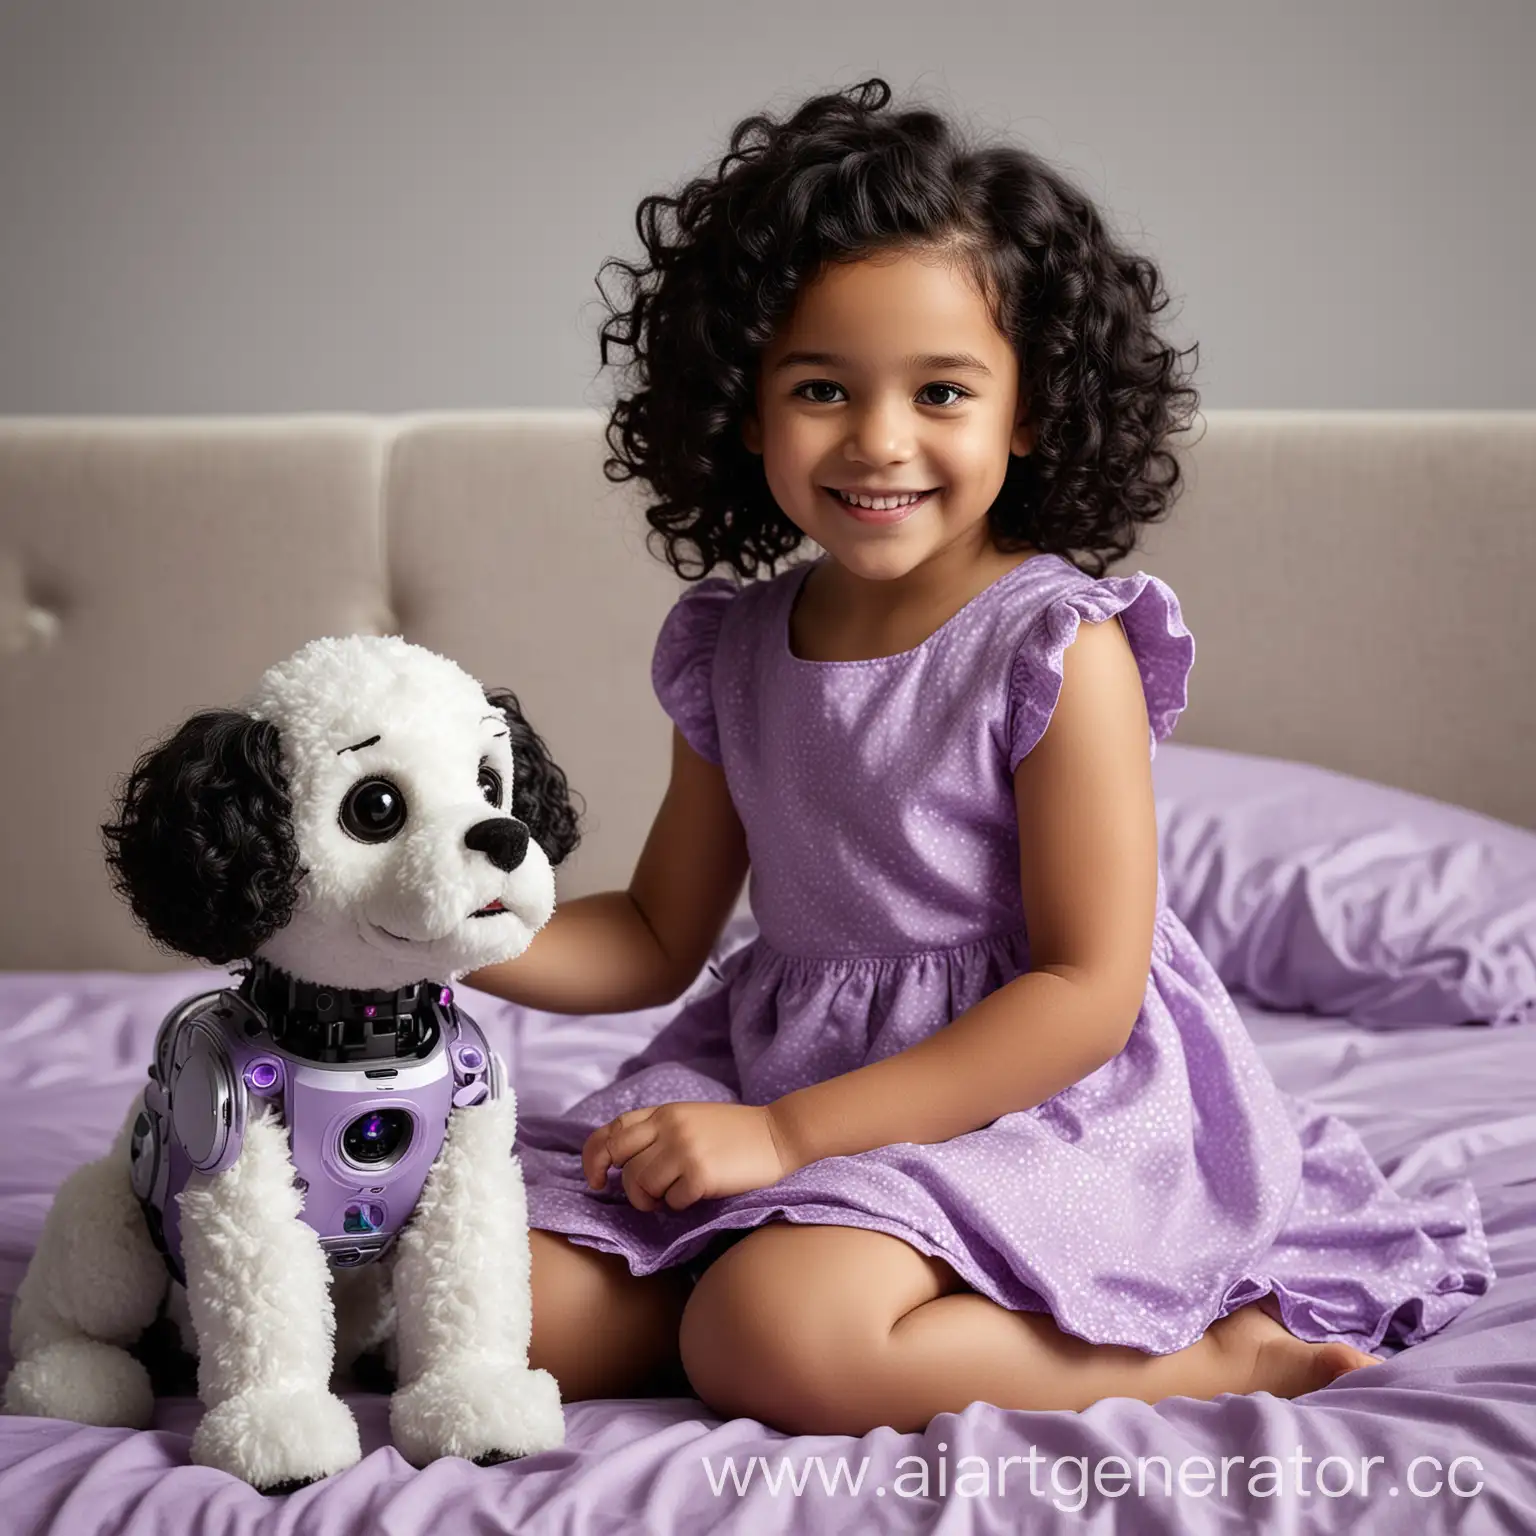 Реальная фотография. Девочка 4 года сидит на кровати и играет с собакой-роботом. На девочке фиолетовое платье и чёрные кудрявые волосы. Она улыбается.